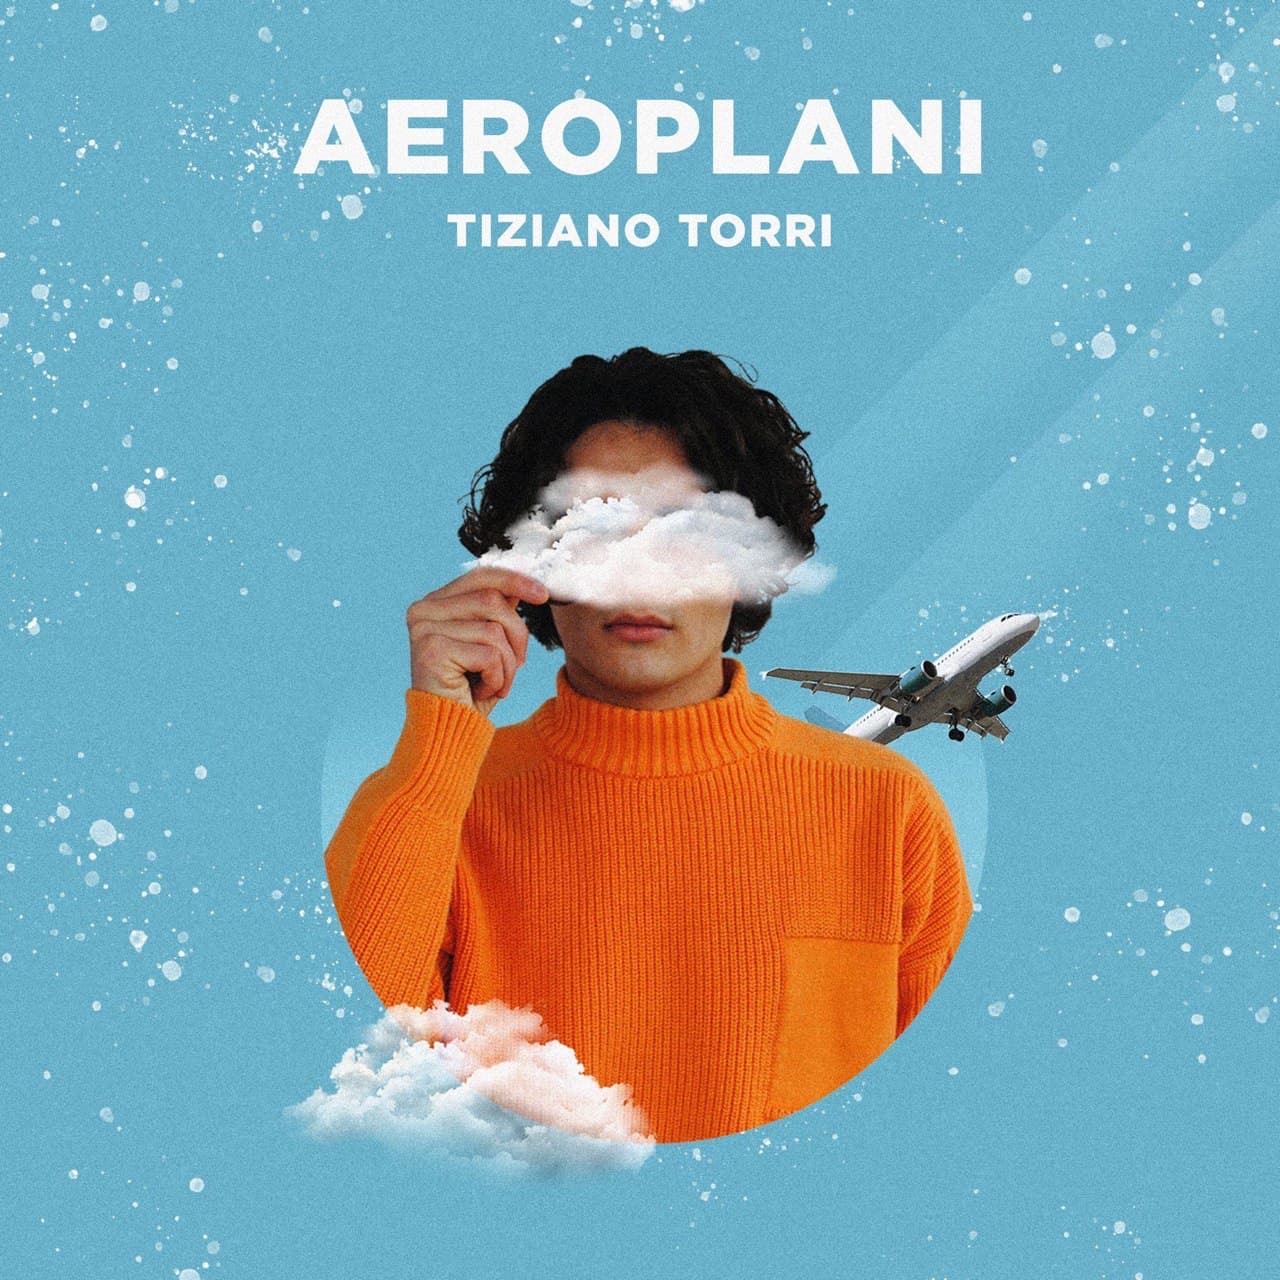 Da venerdì 12 febbraio sarà in rotazione radiofonica “AEROPLANI”, il singolo d’esordio di TIZIANO TORRI, già sulle piattaforme digitali dal 5 febbraio